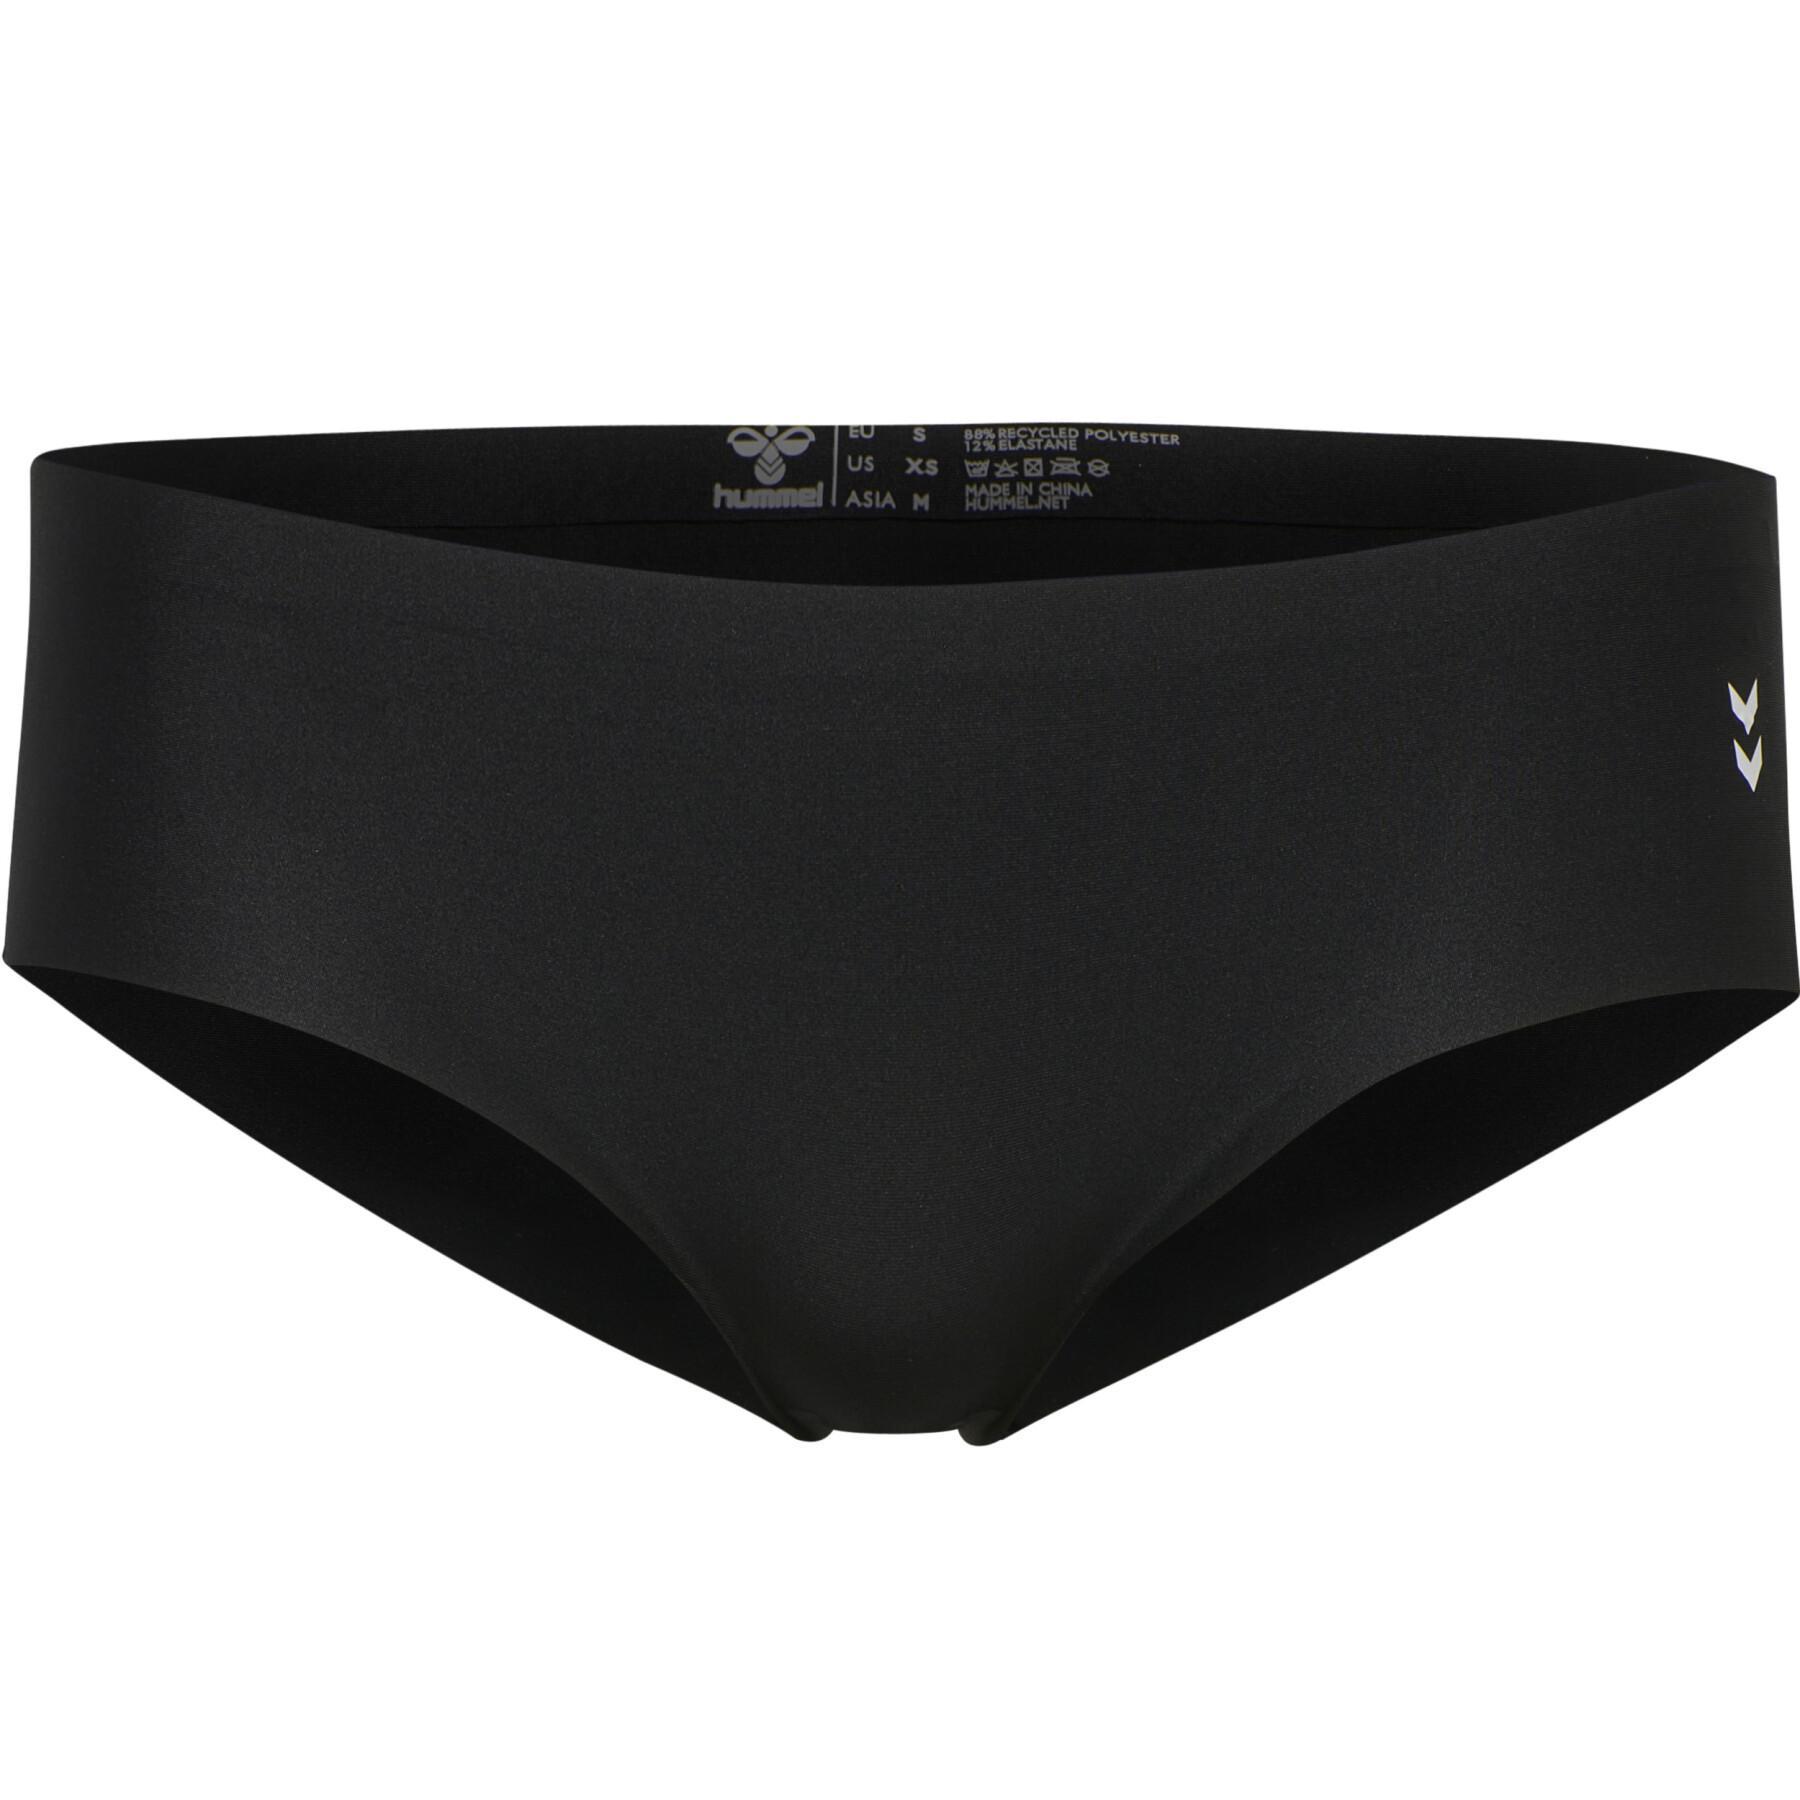 Women's panties Hummel MT Breeze (x3)